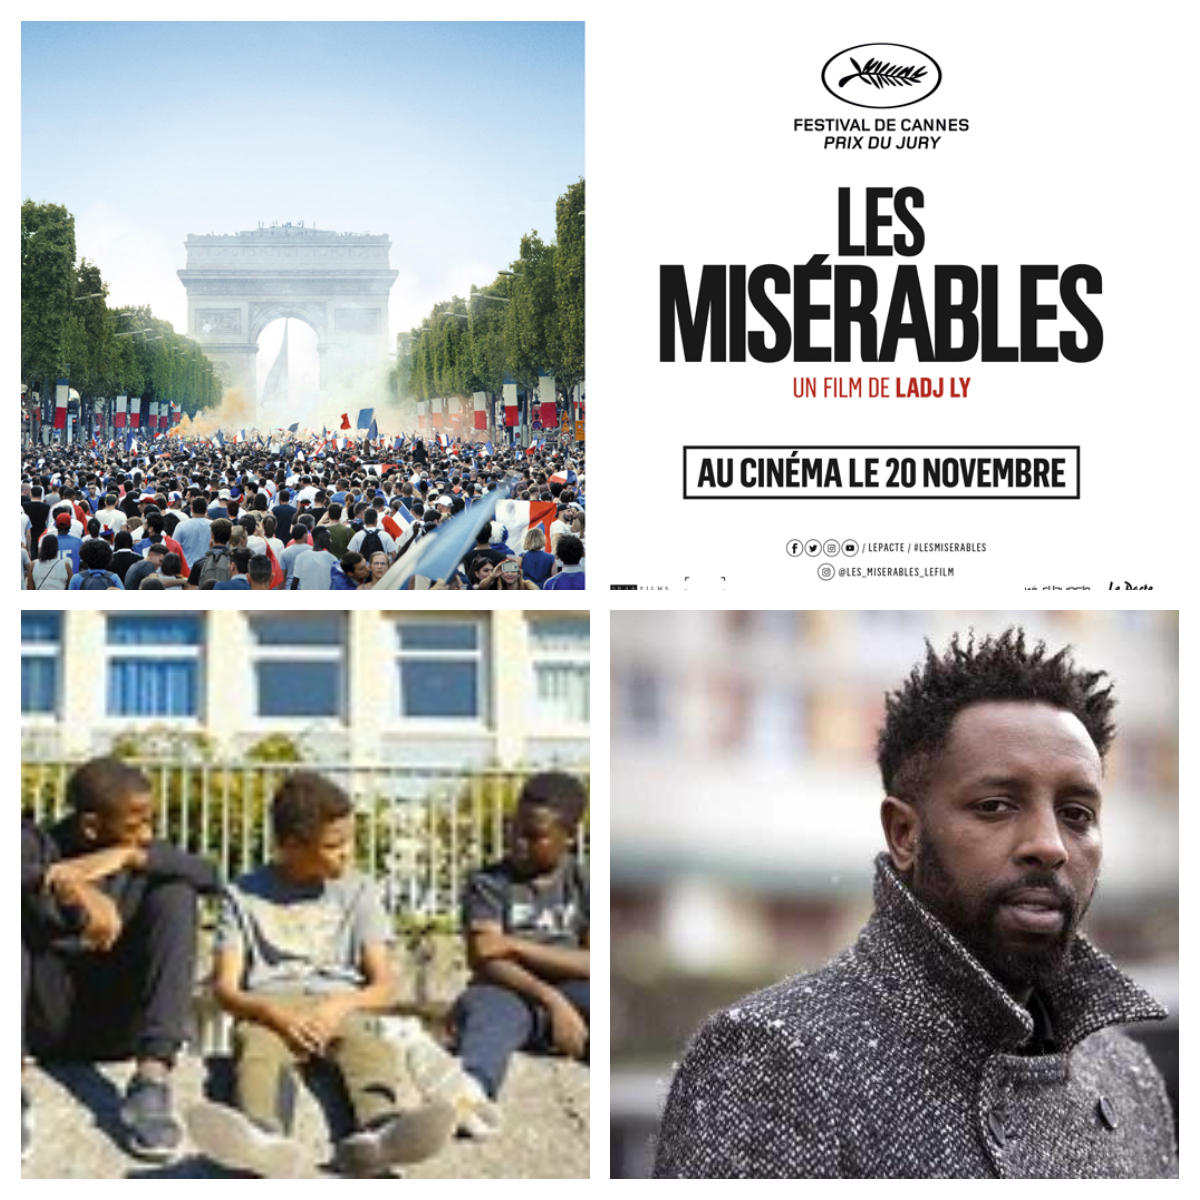 Les Misérables, Un film qui interroge la société dans sa diversité